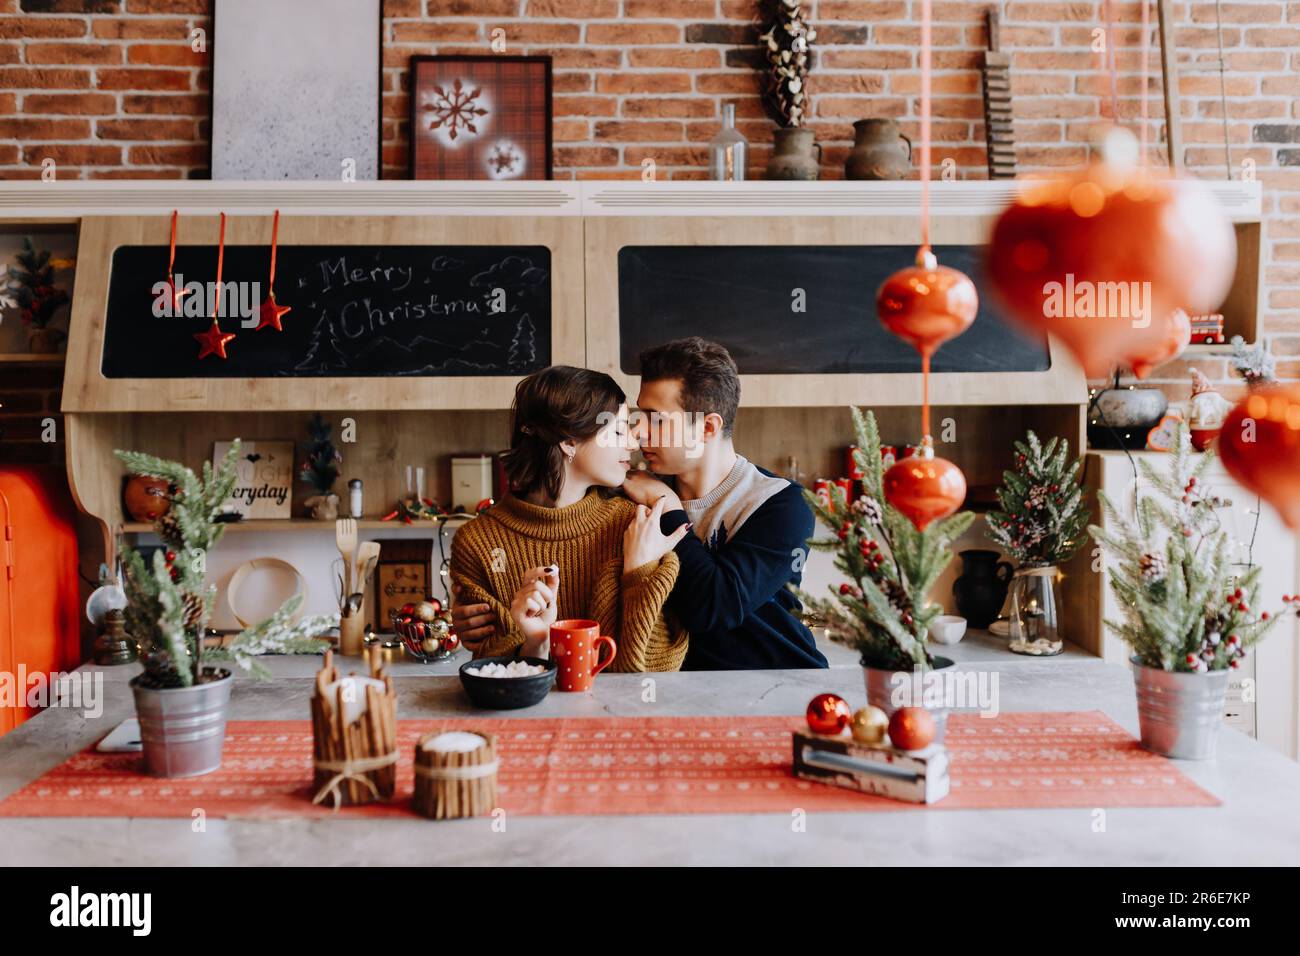 le couple se serre dans ses bras en étant assis dans la cuisine au milieu de noël Banque D'Images